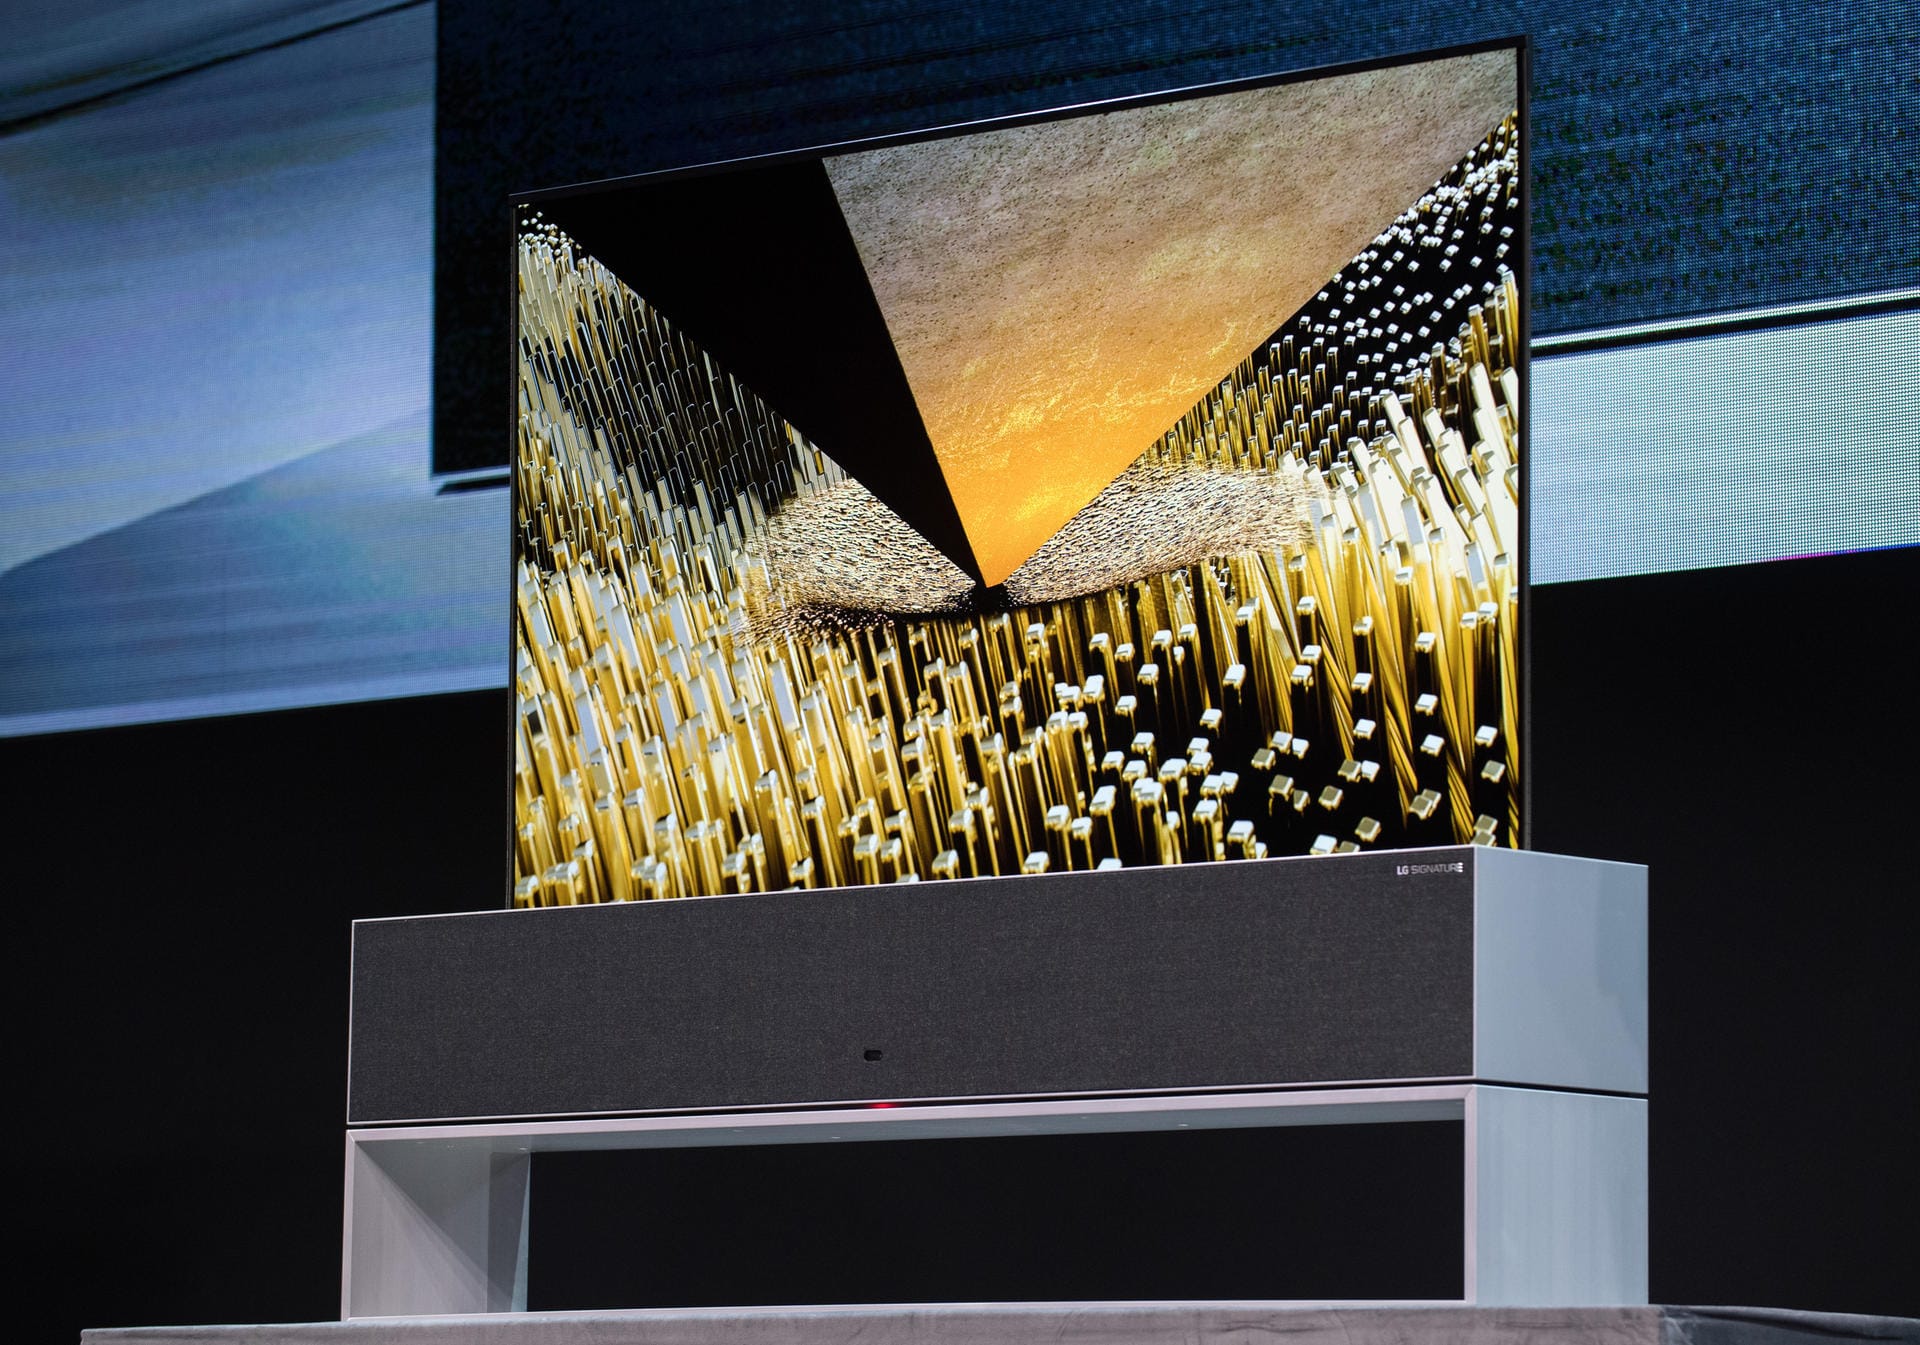 Der LG Signature OLED TV R ist ein ultradünner, flexibler Bildschirm, der sich nach dem Gebrauch selbst einrollt und in einer Box verschwindet. Im ausgerollten Zustand misst der Fernseher 75 Zoll.